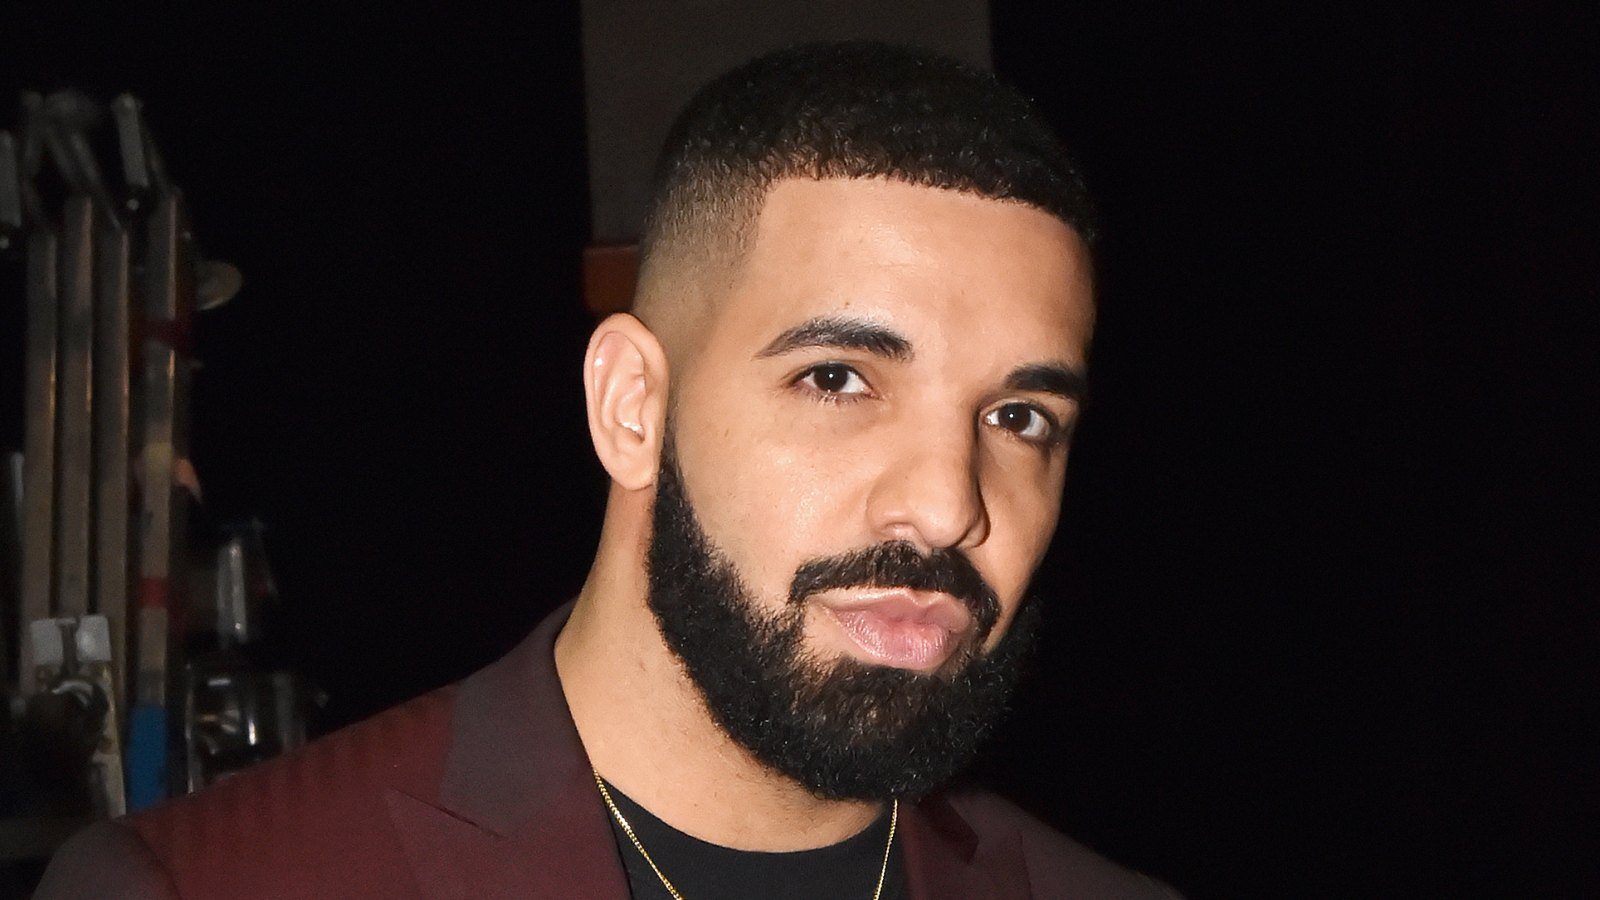 Drake-Plastic-Surgery-Rumors-Shirtless-Photo